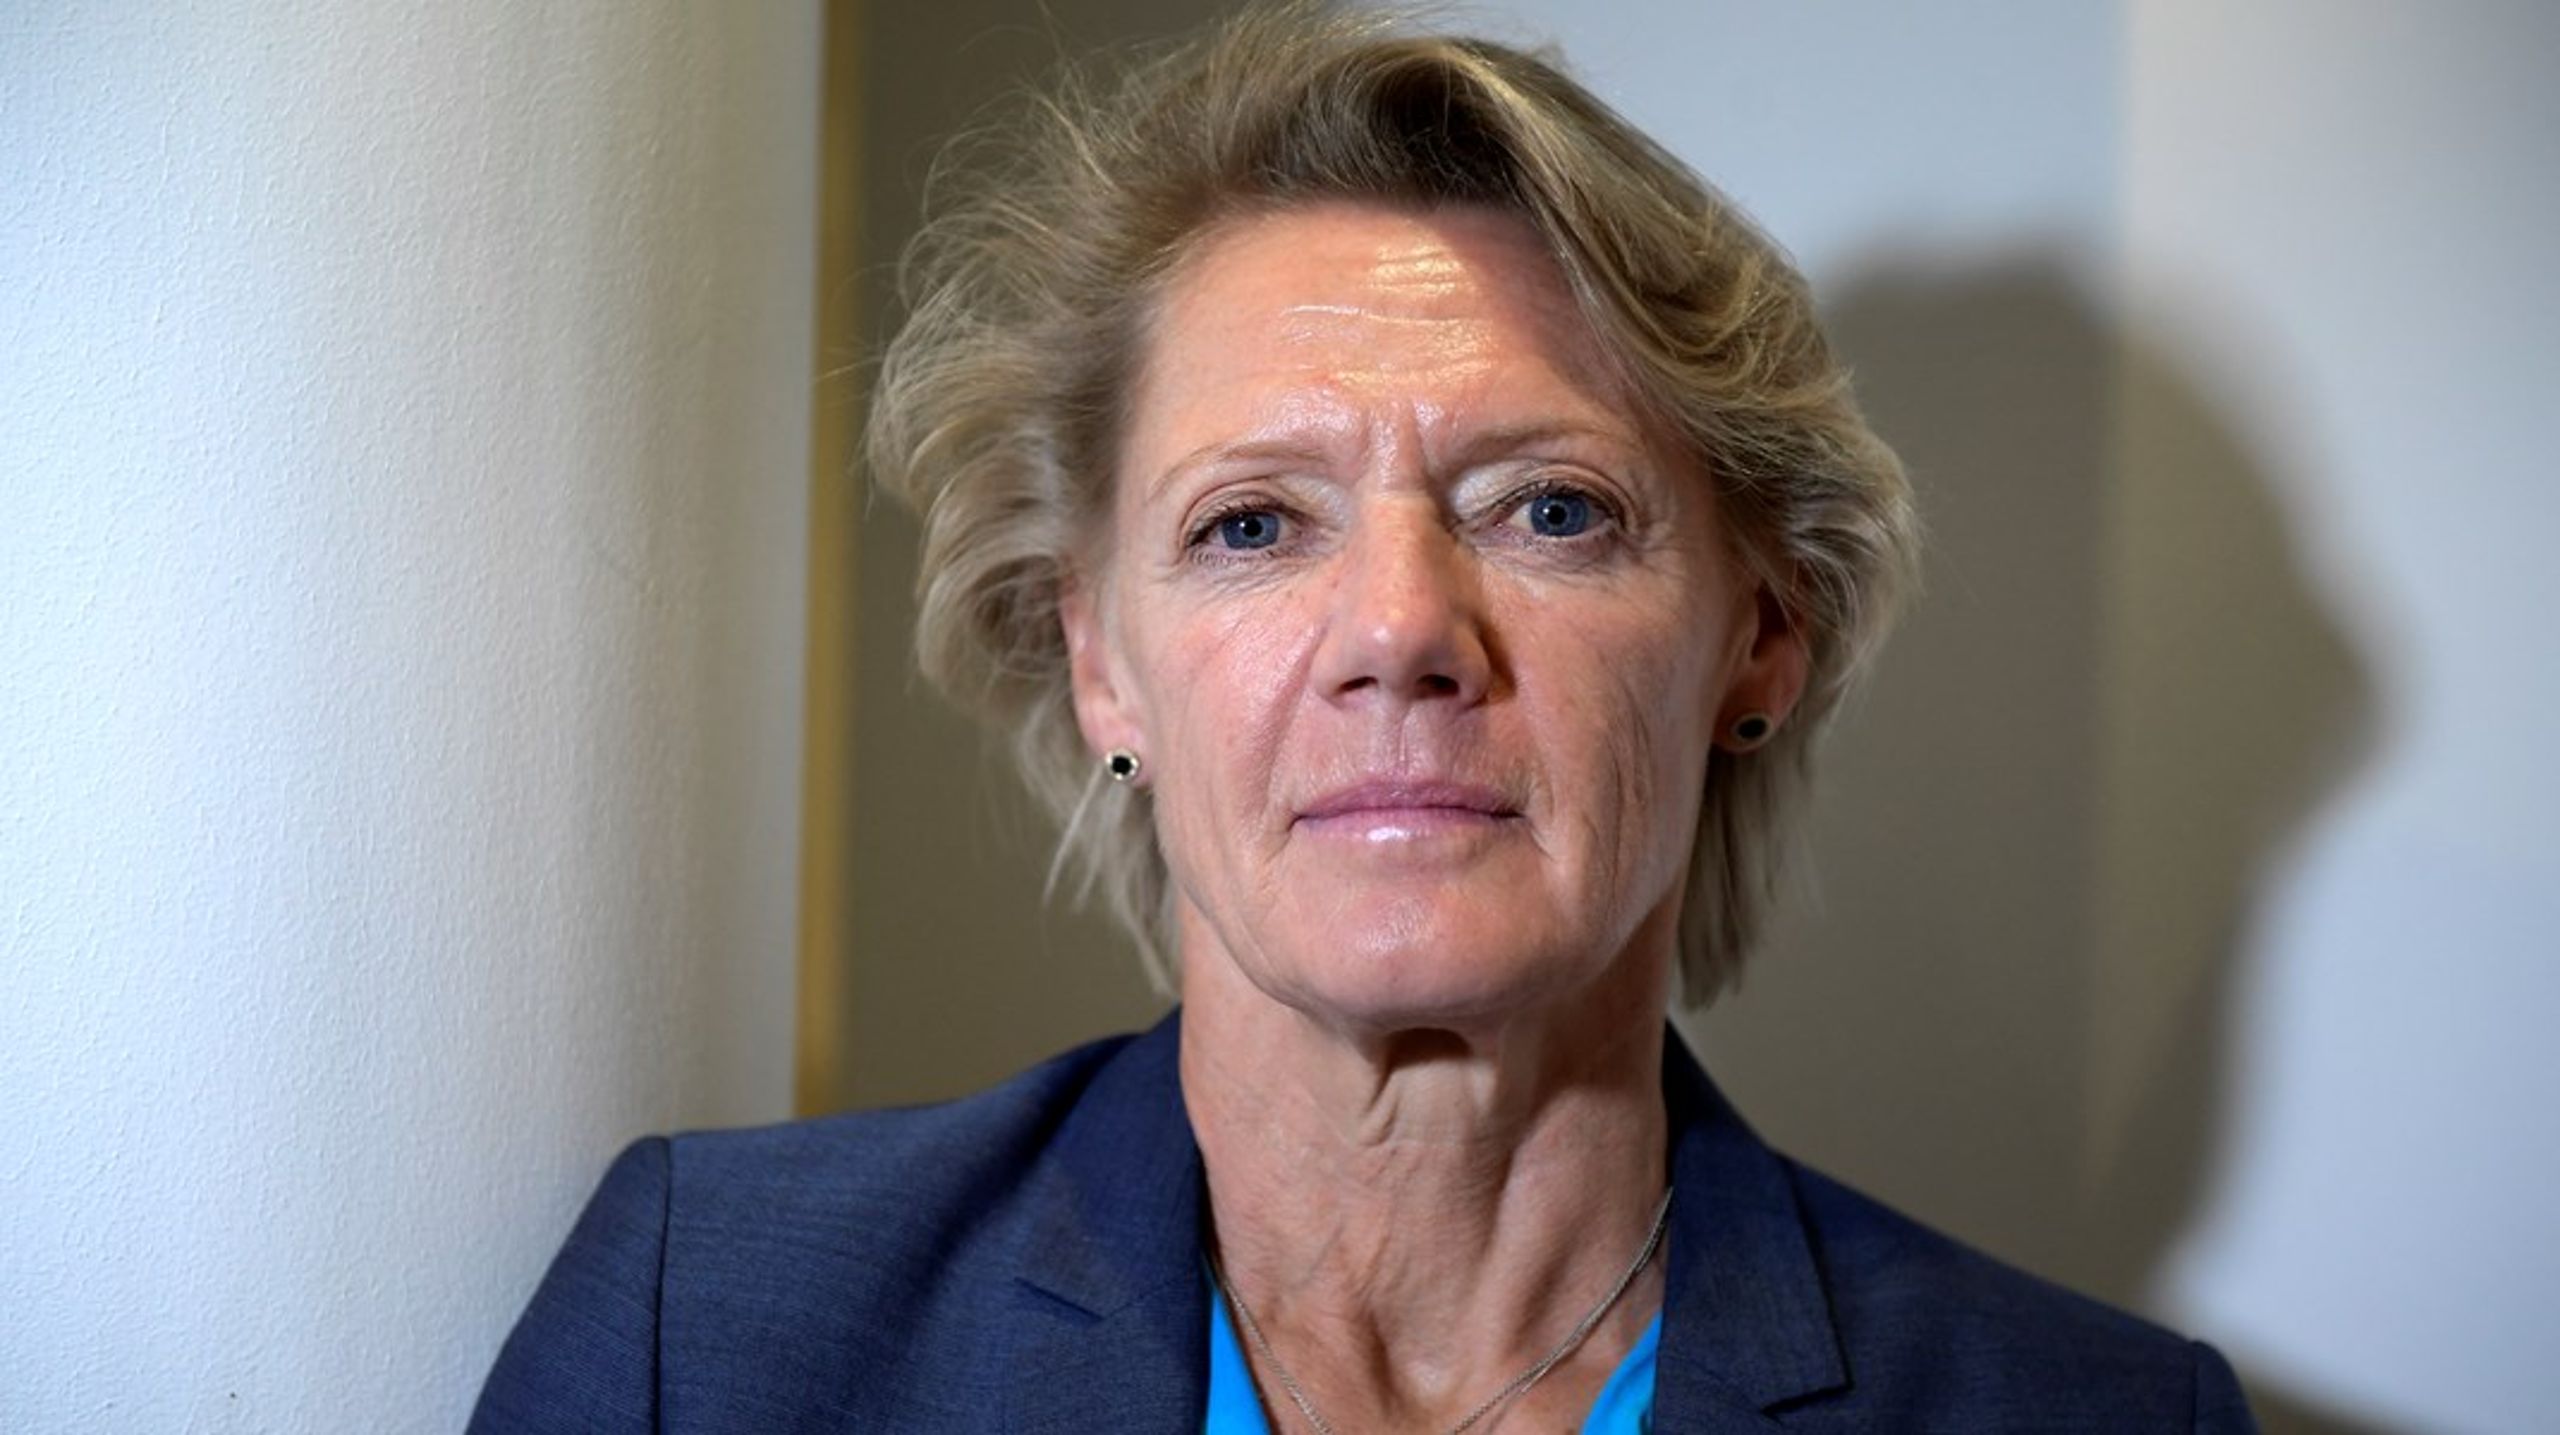 Ulla Hamilton har fel om skolpengen, menar debattören.